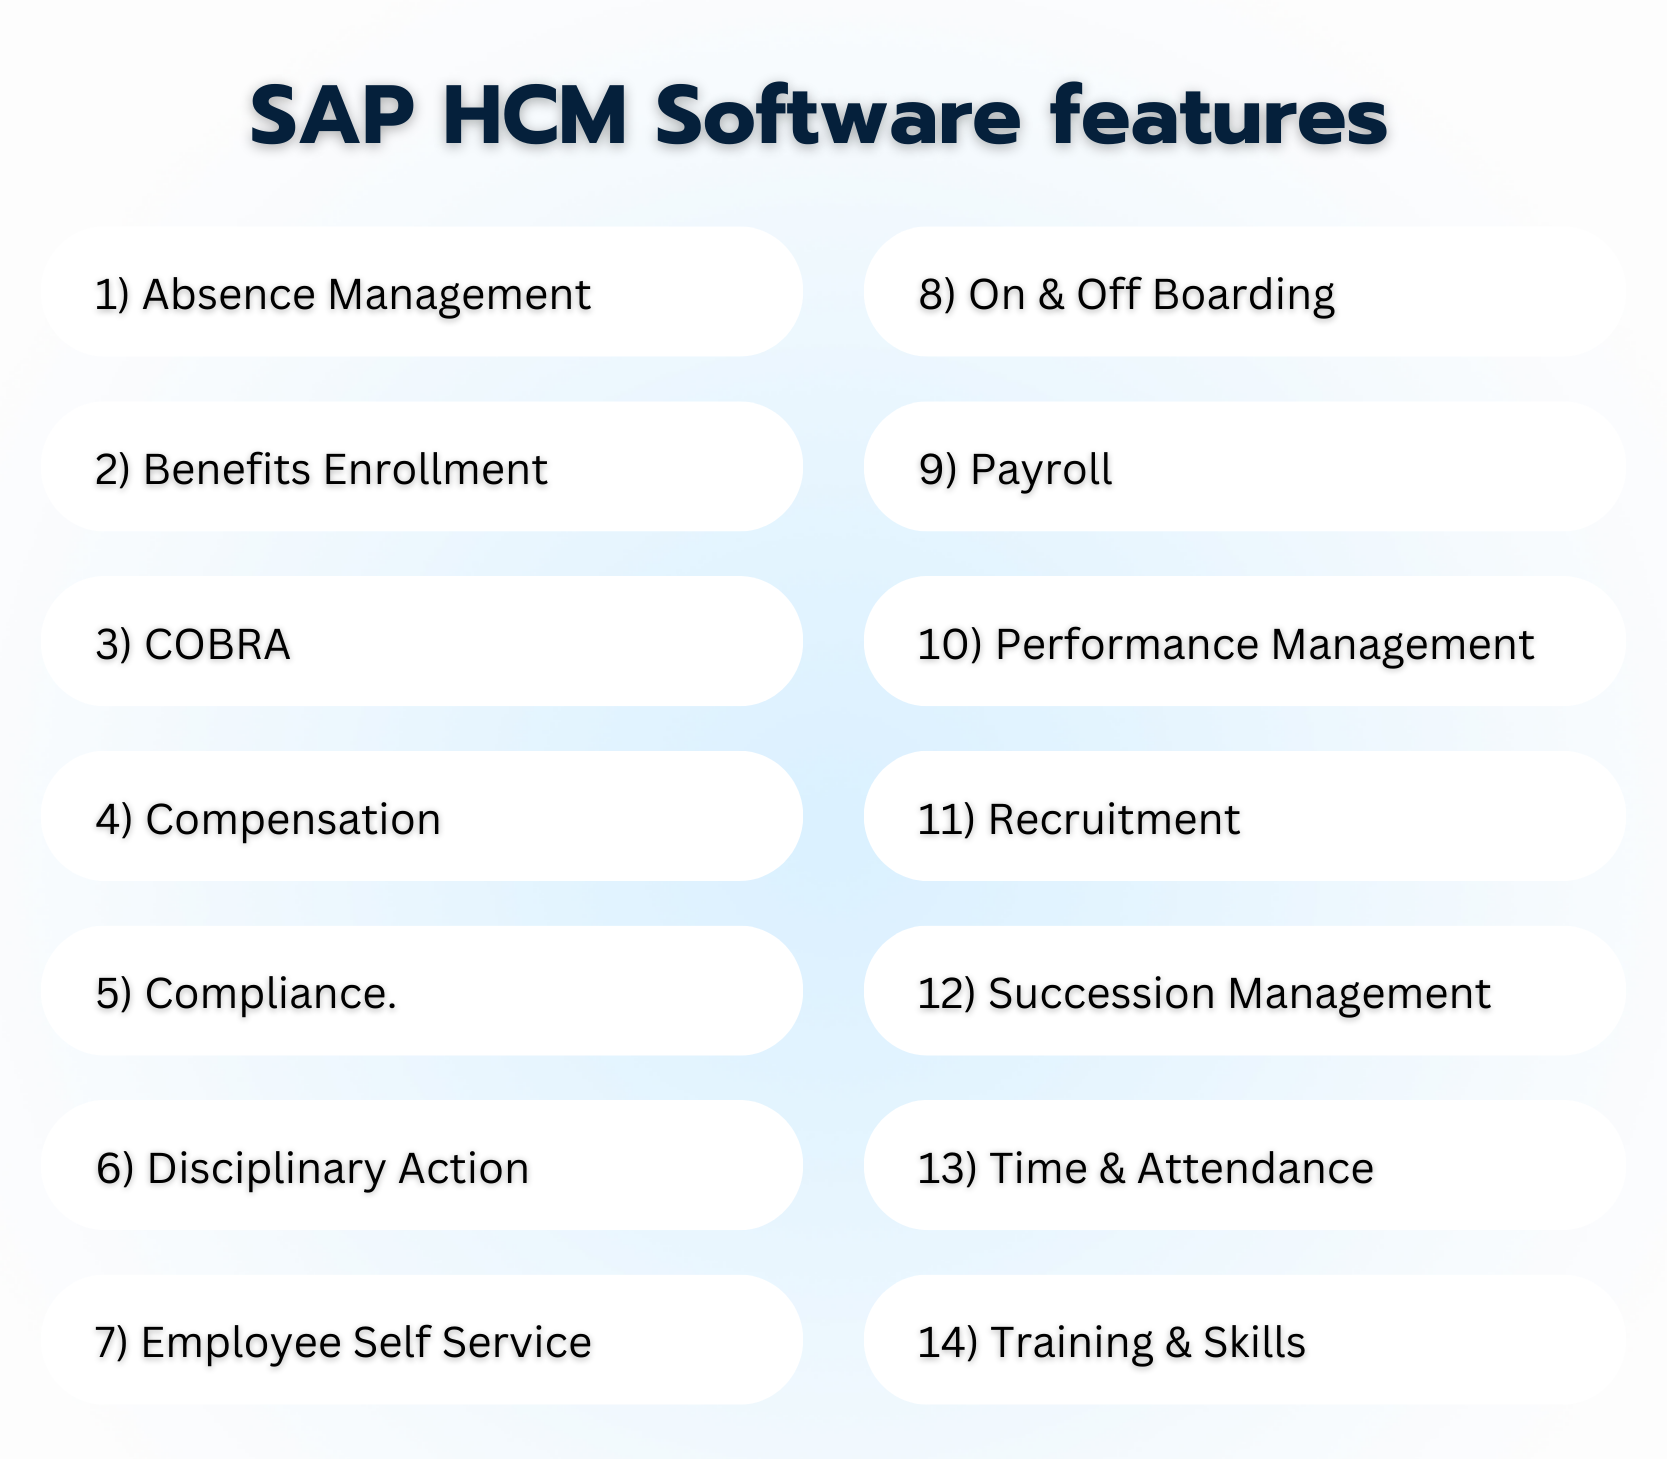 sap hcm software features